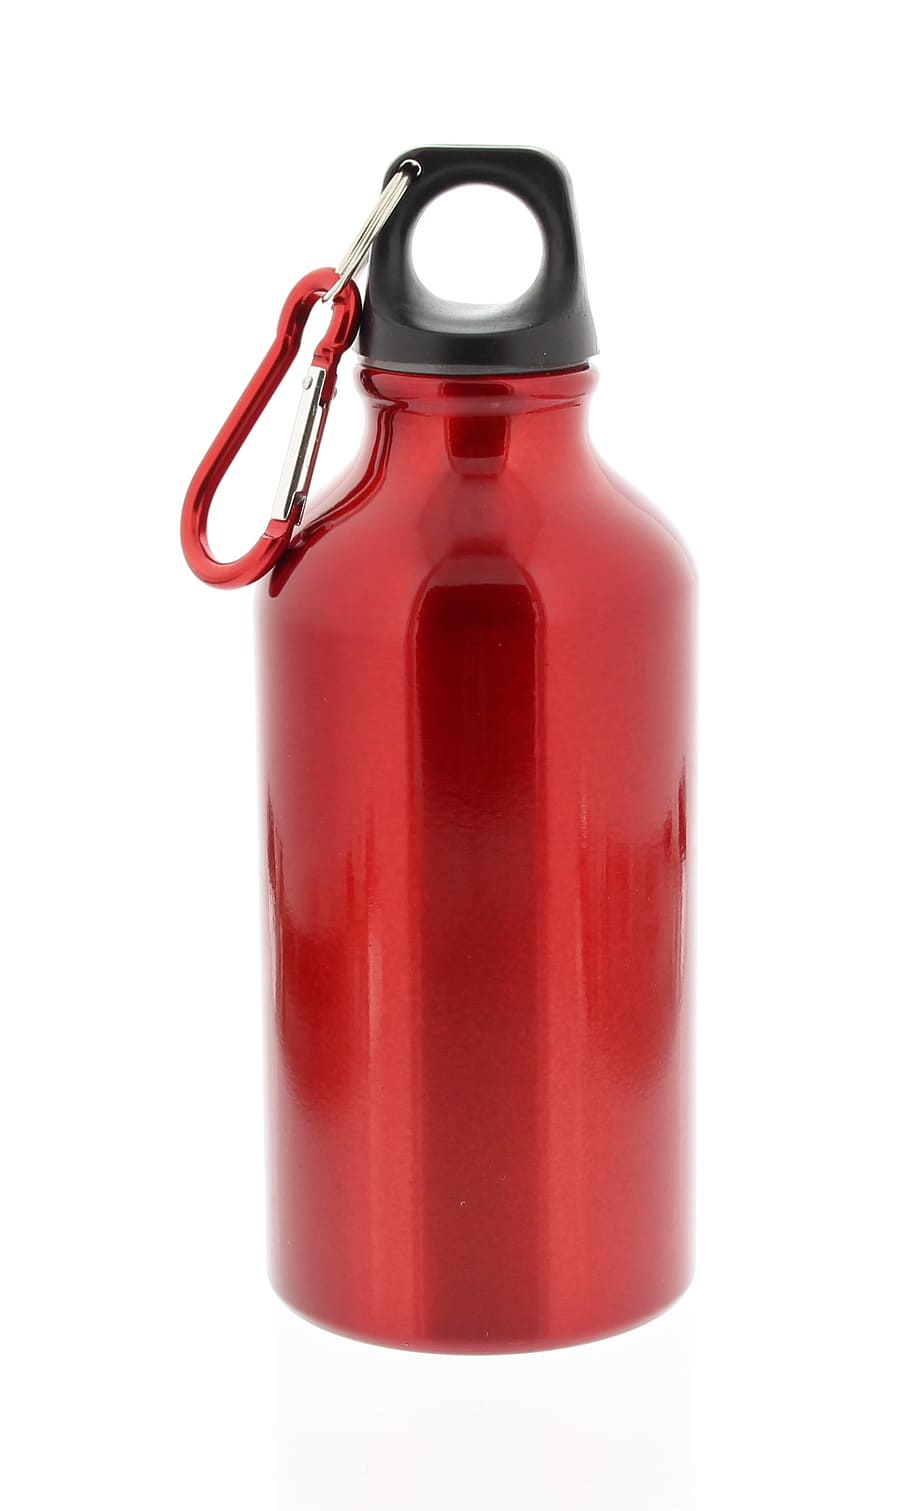 vermelho, copo, mosquetão, garrafa de água, garrafa, alumínio, isolado, branco fundo, único objeto, líquido